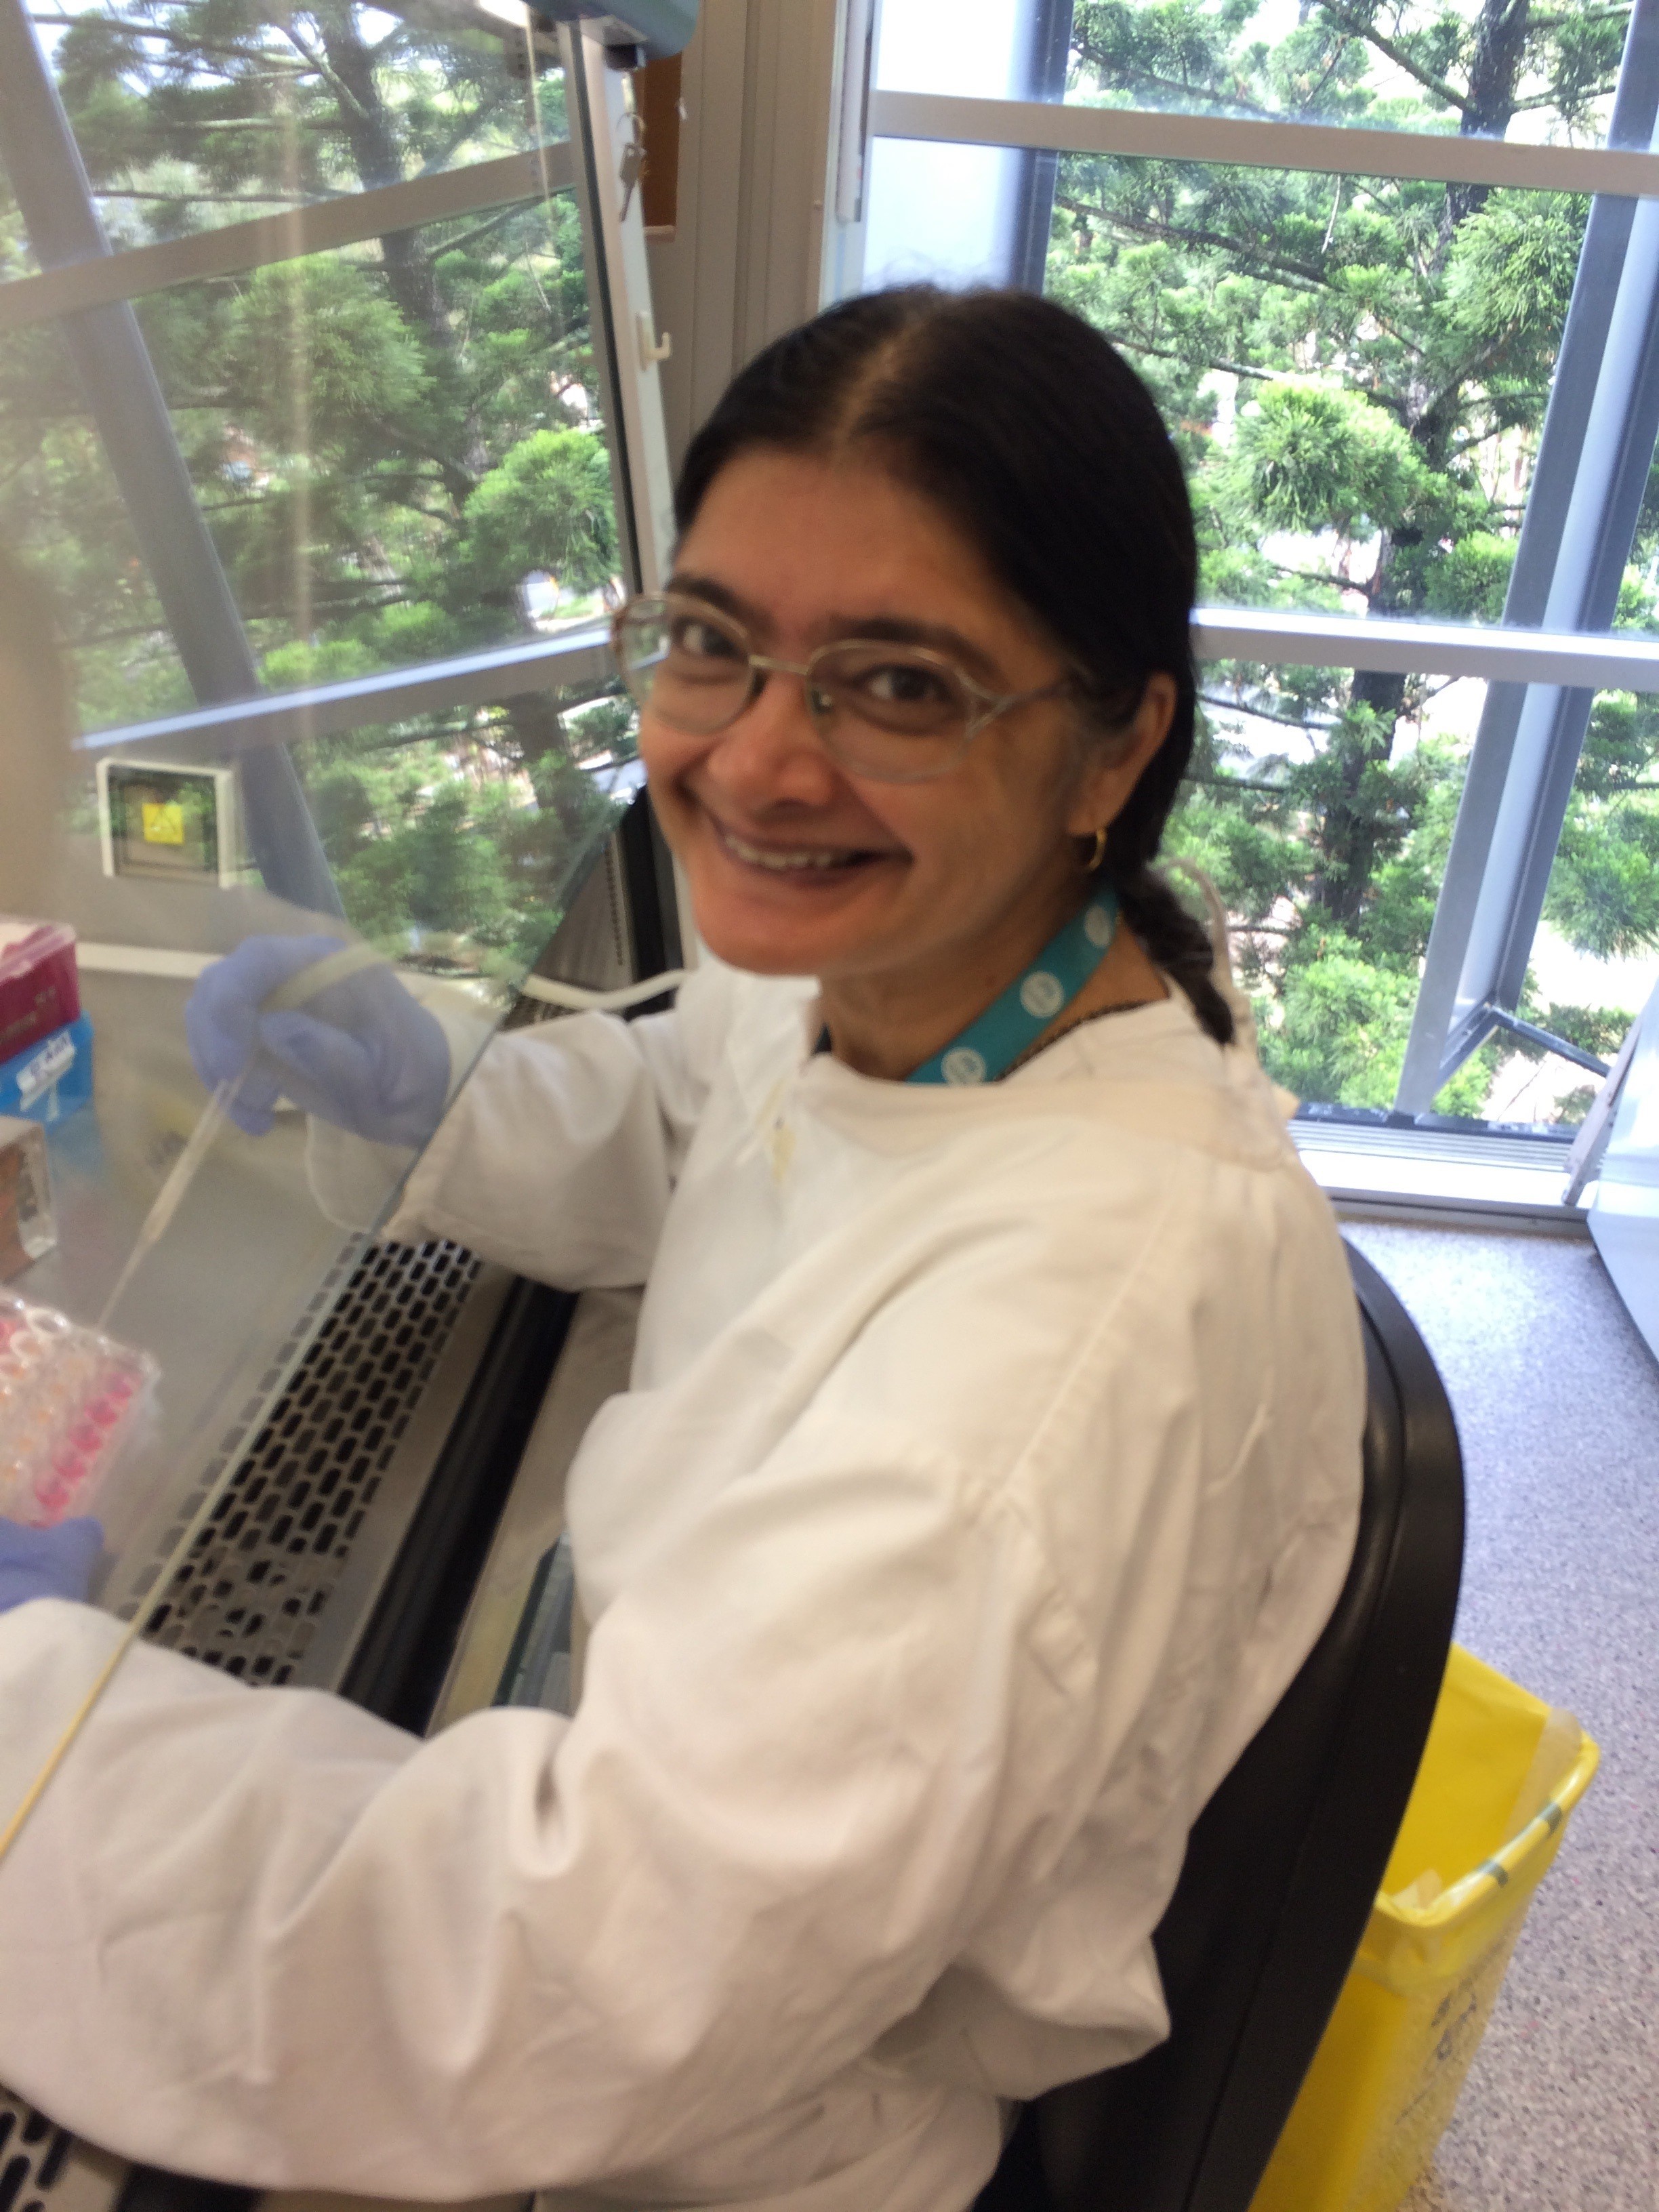 Rama Addepalli working in her lab